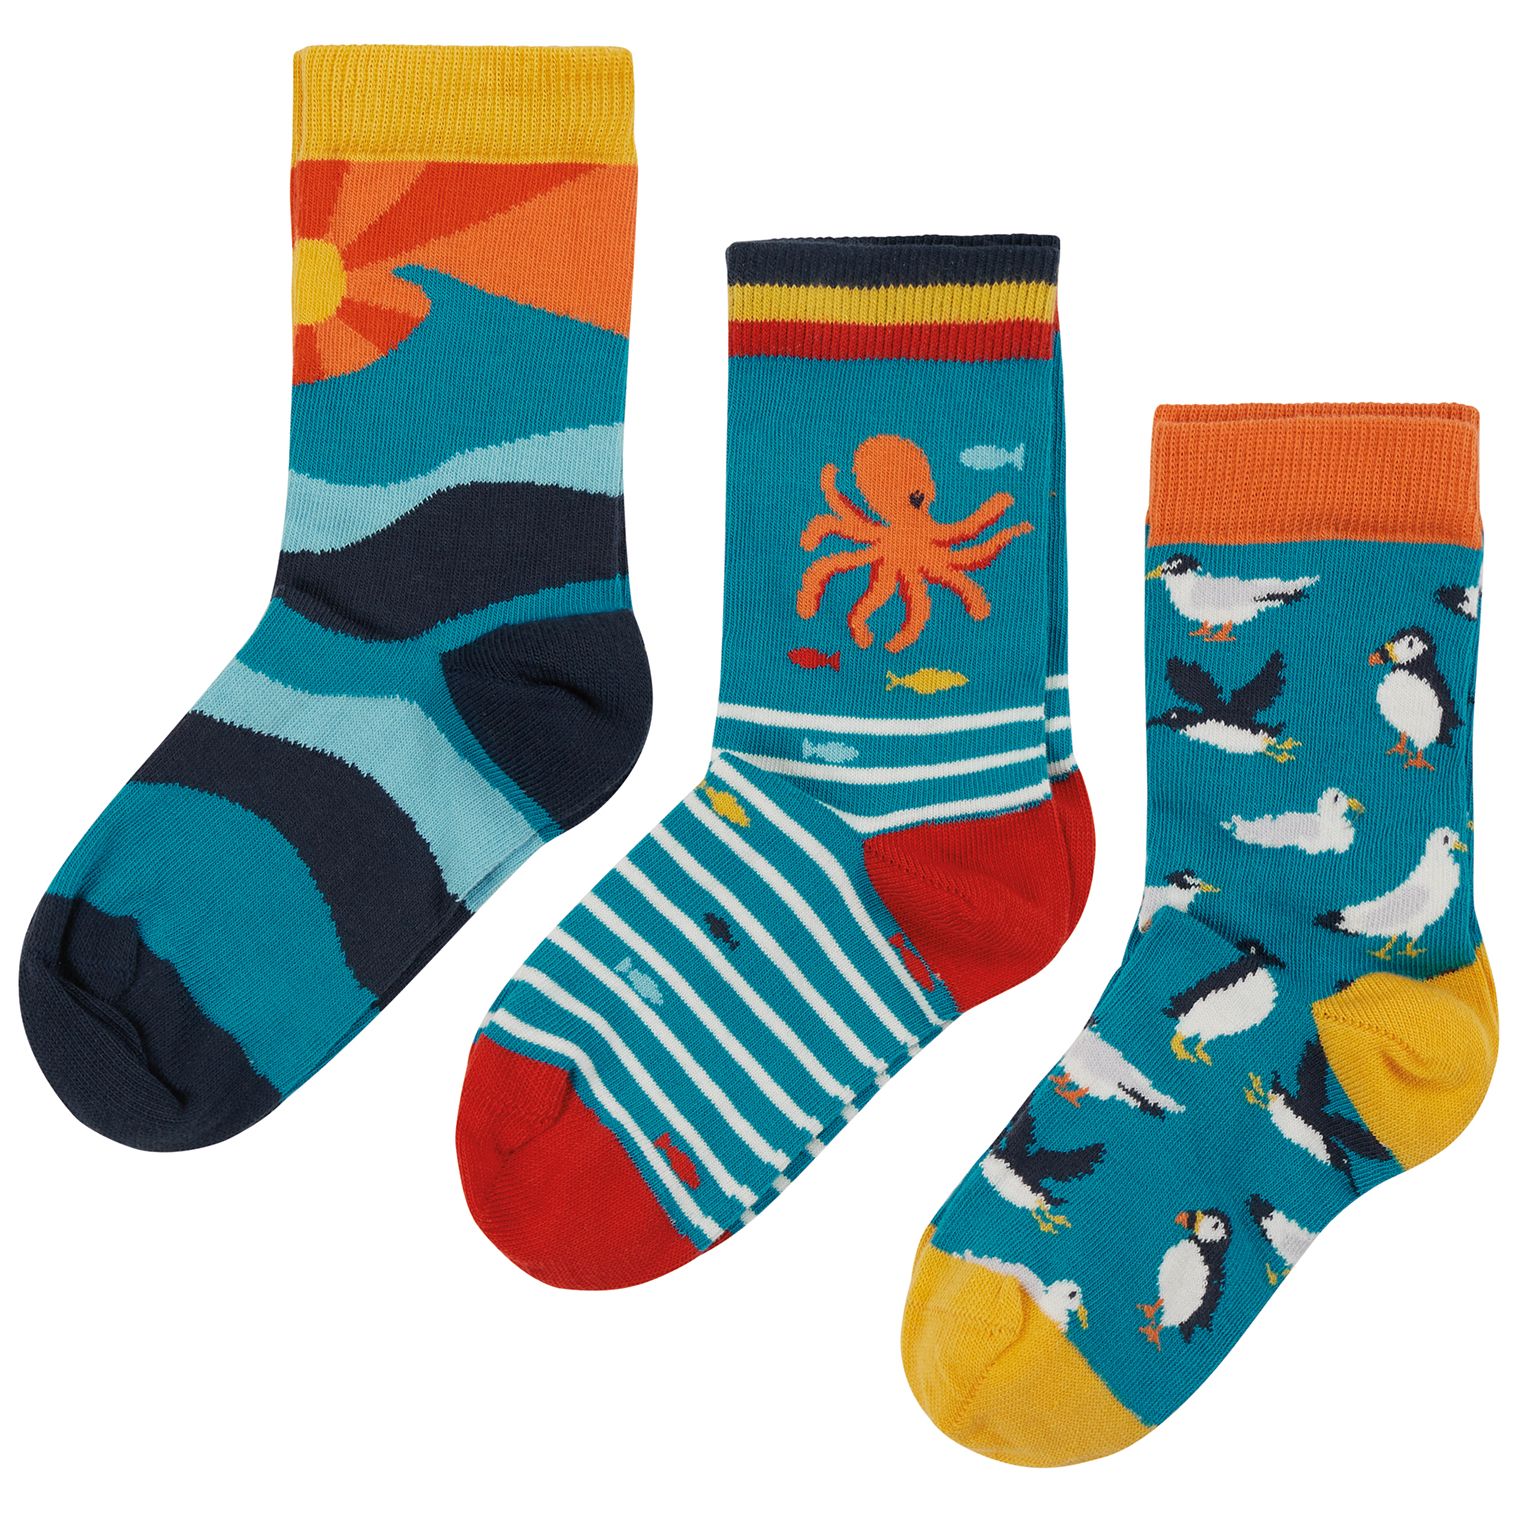 Kinder-Socken im 3er-Pack mit Meeresmotiven